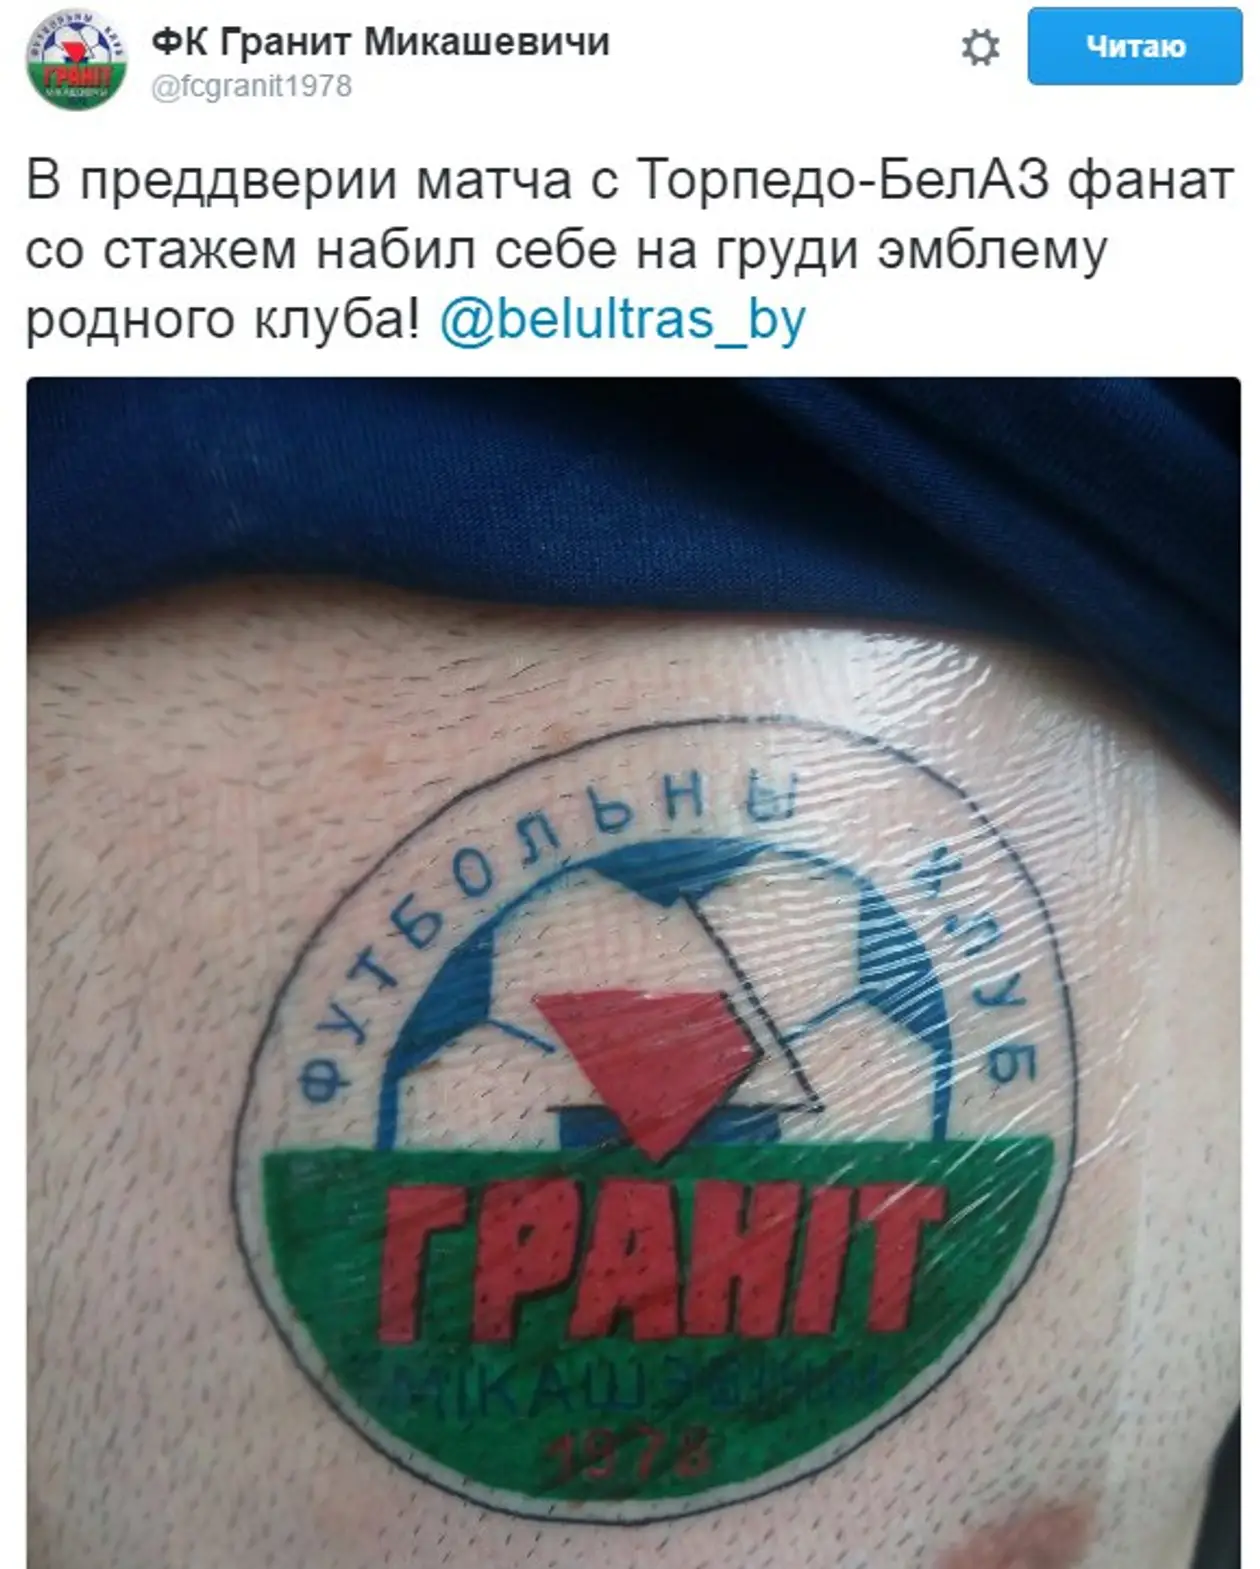 Фанат «Гранита» сделал тату с эмблемой клуба